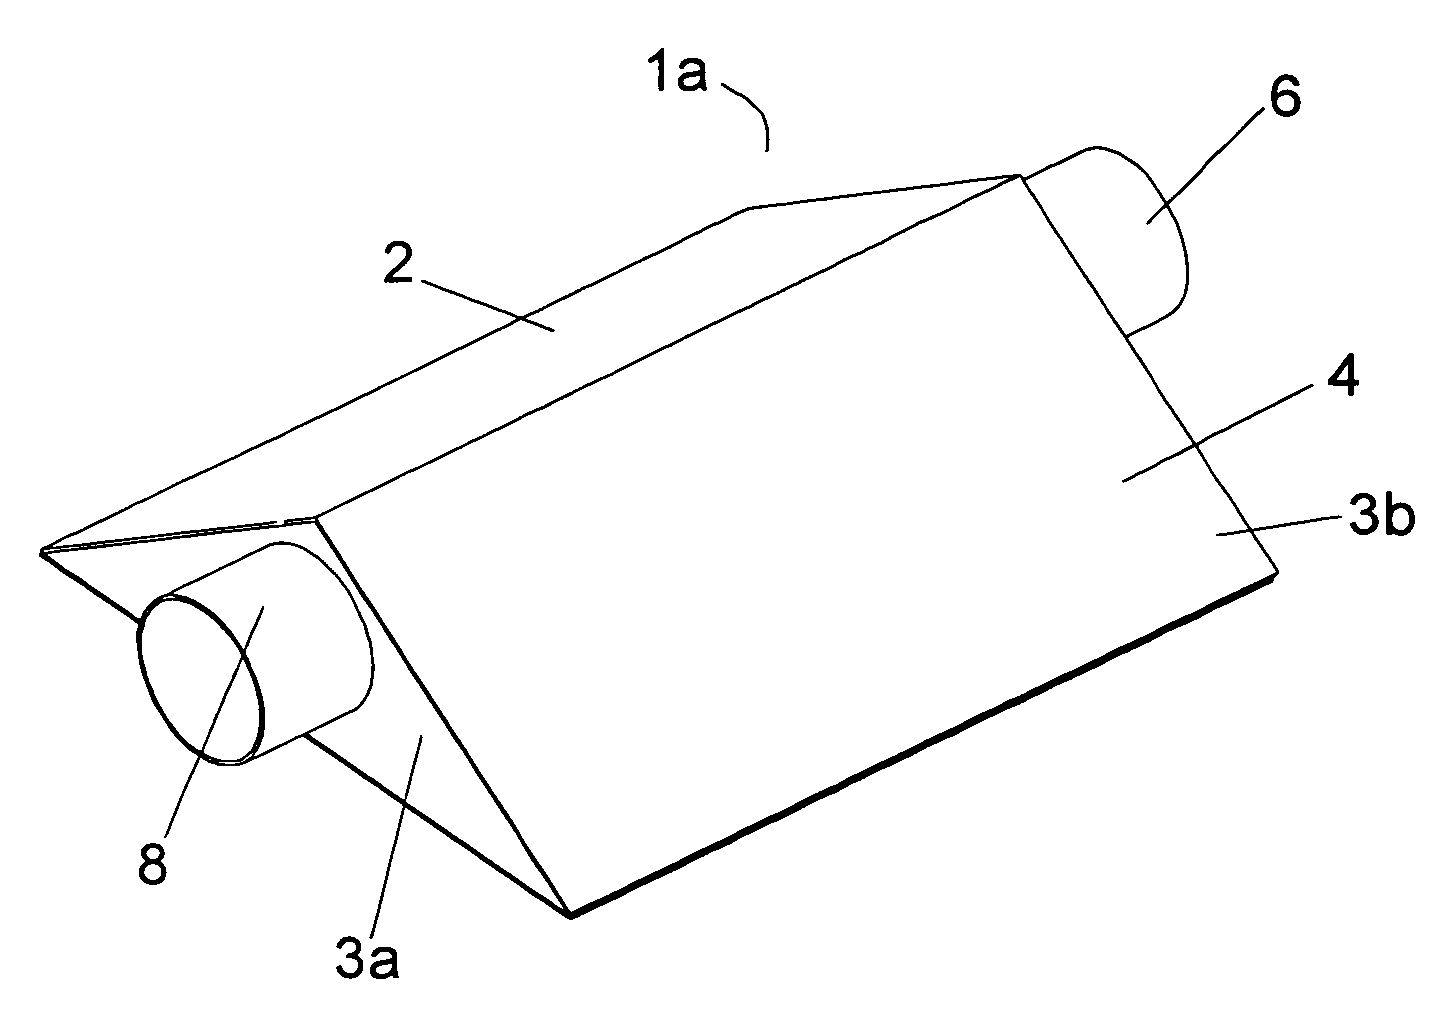 Triangular cross section exhaust muffler